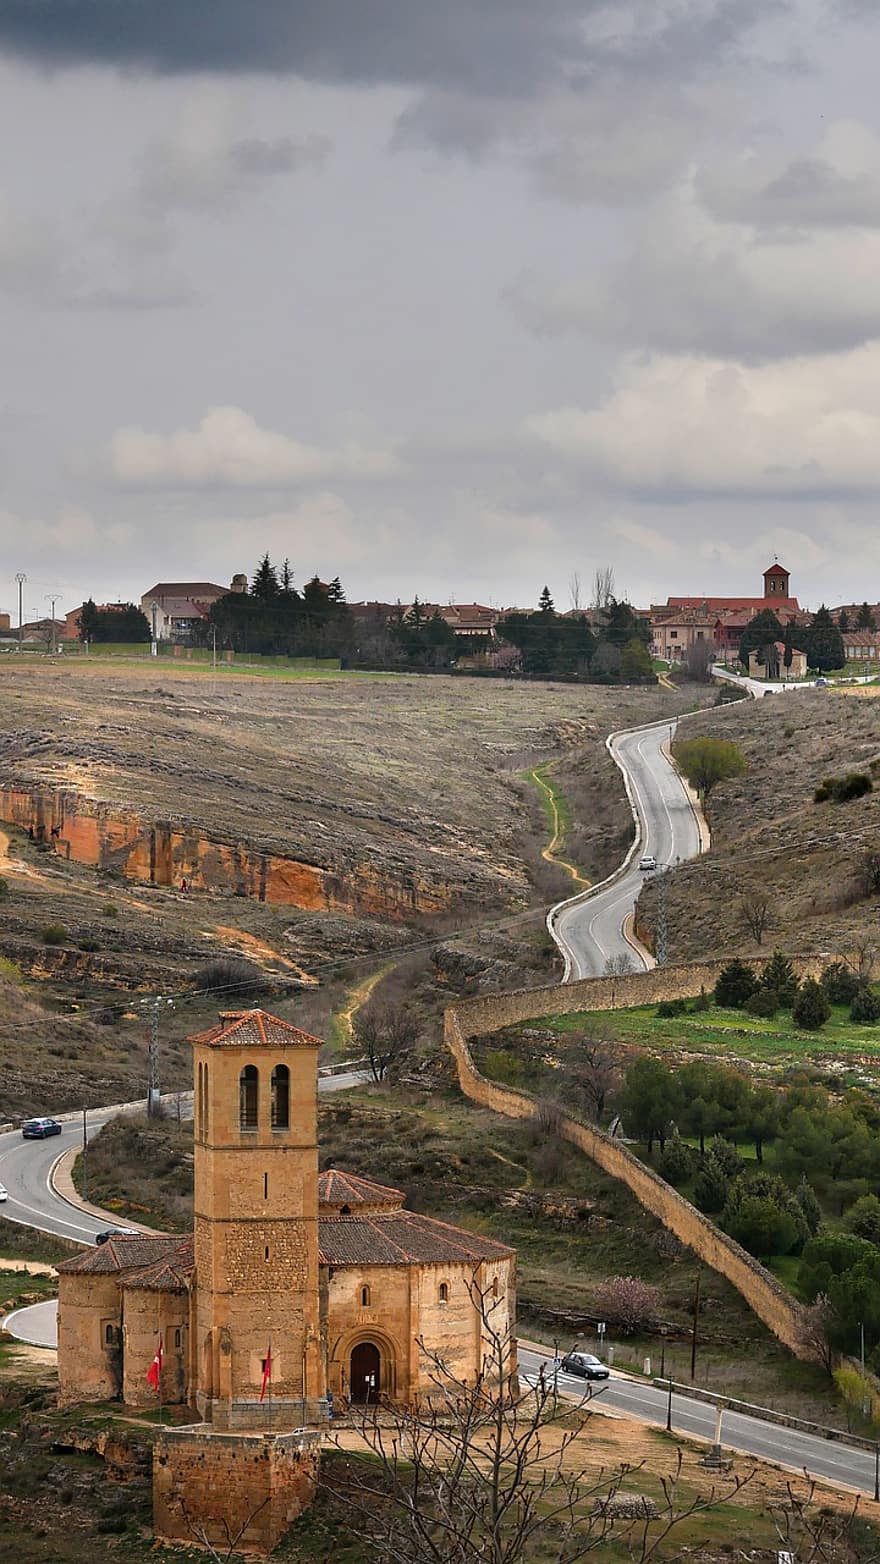 Espanja, Segovia, kappeli, matkustaa, arkkitehtuuri, kuuluisa paikka, maaseudulla, maisema, viljelmät, kristinusko, historia